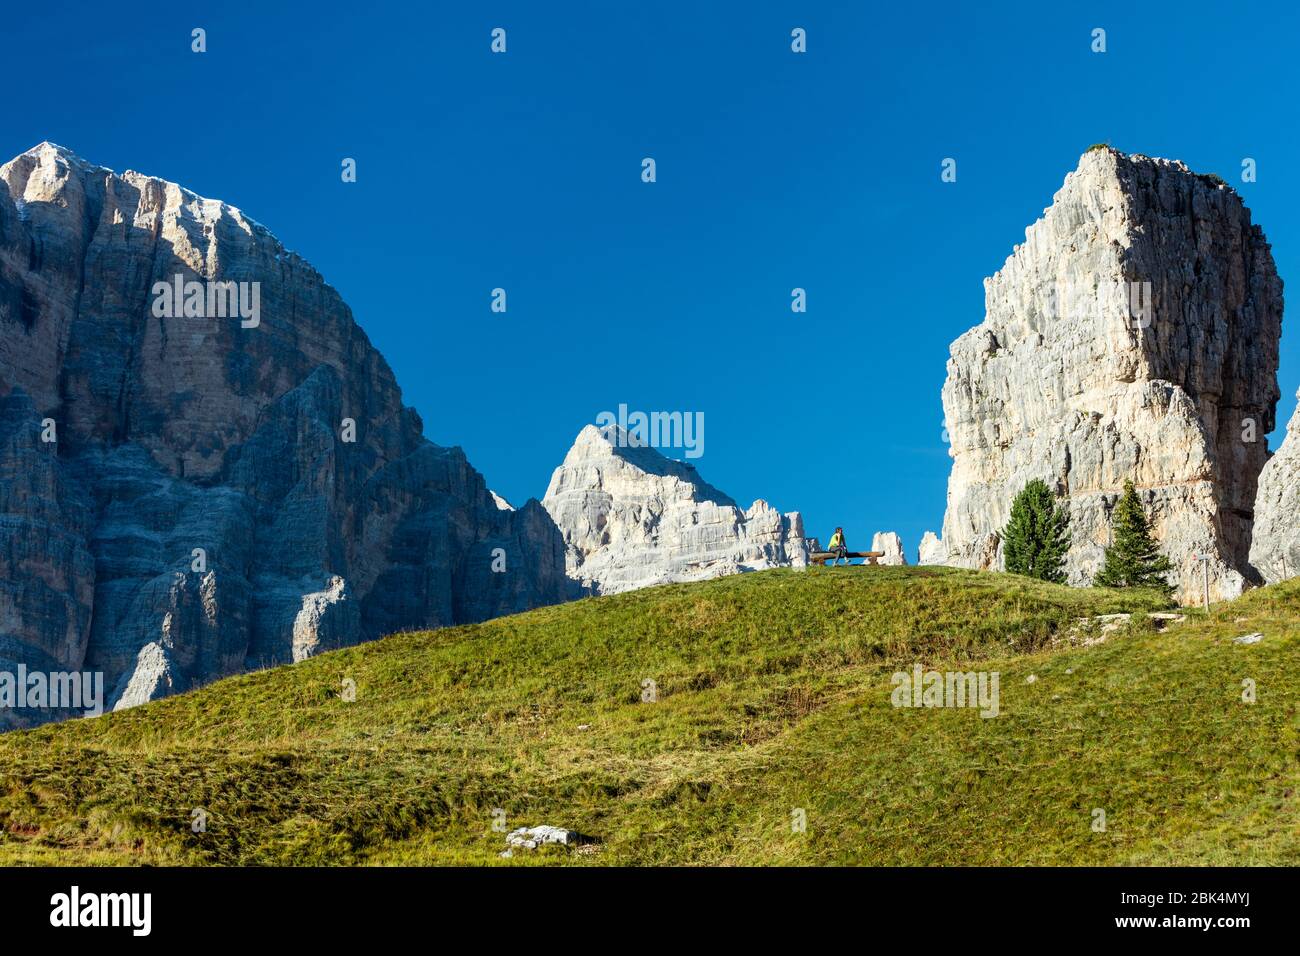 Homme sur un téléphone cellulaire avec Tofana di Rozes et les Dolomites qui dominent près de Cortina d'Ampezzo, Vénétie, Italie Banque D'Images